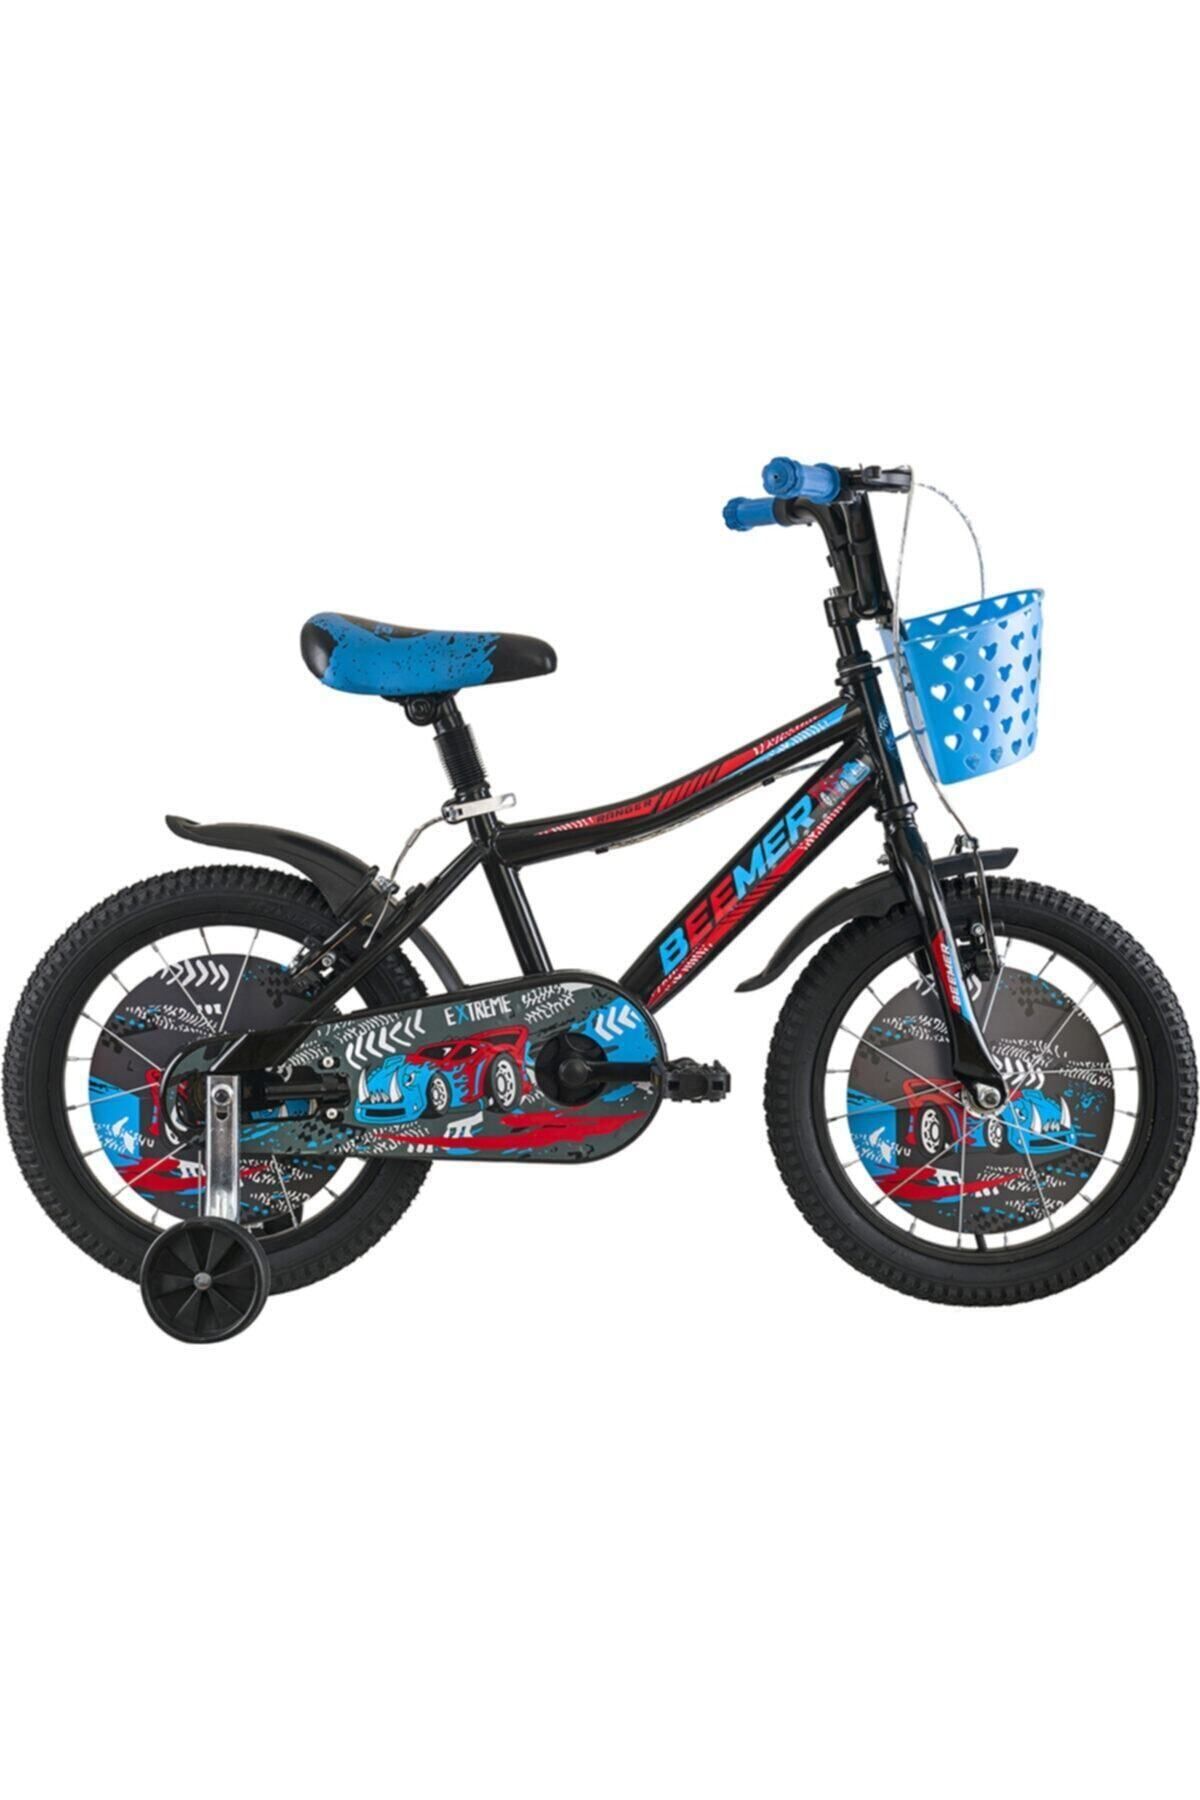 Tunca Beemer 16 Çocuk Bisikleti Mavi 2021 Model.